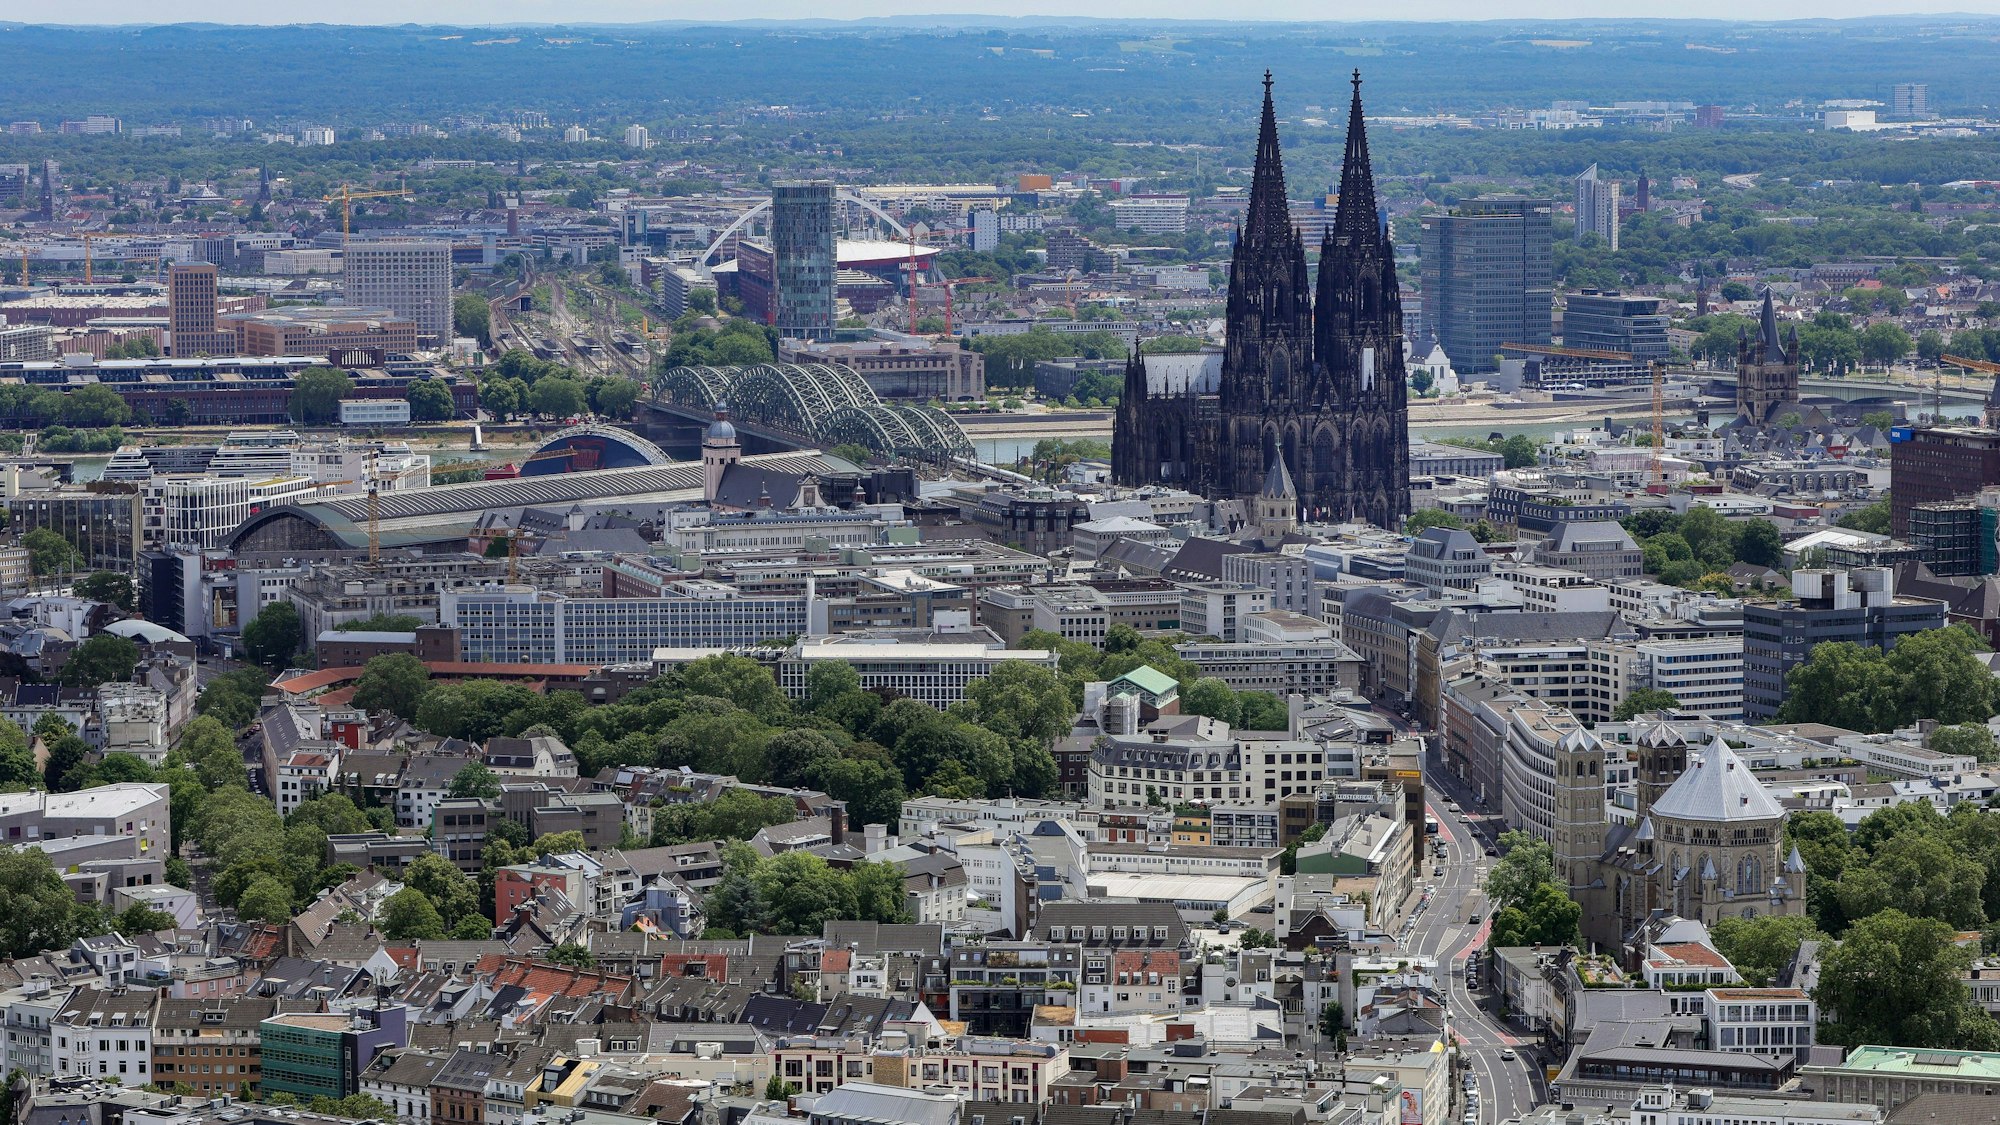 30.06.2023, Köln: Der Blick auf Köln vom Colonius.
Blick auf den Dom und das LVR-Hochhaus.
Foto: Michael Bause



